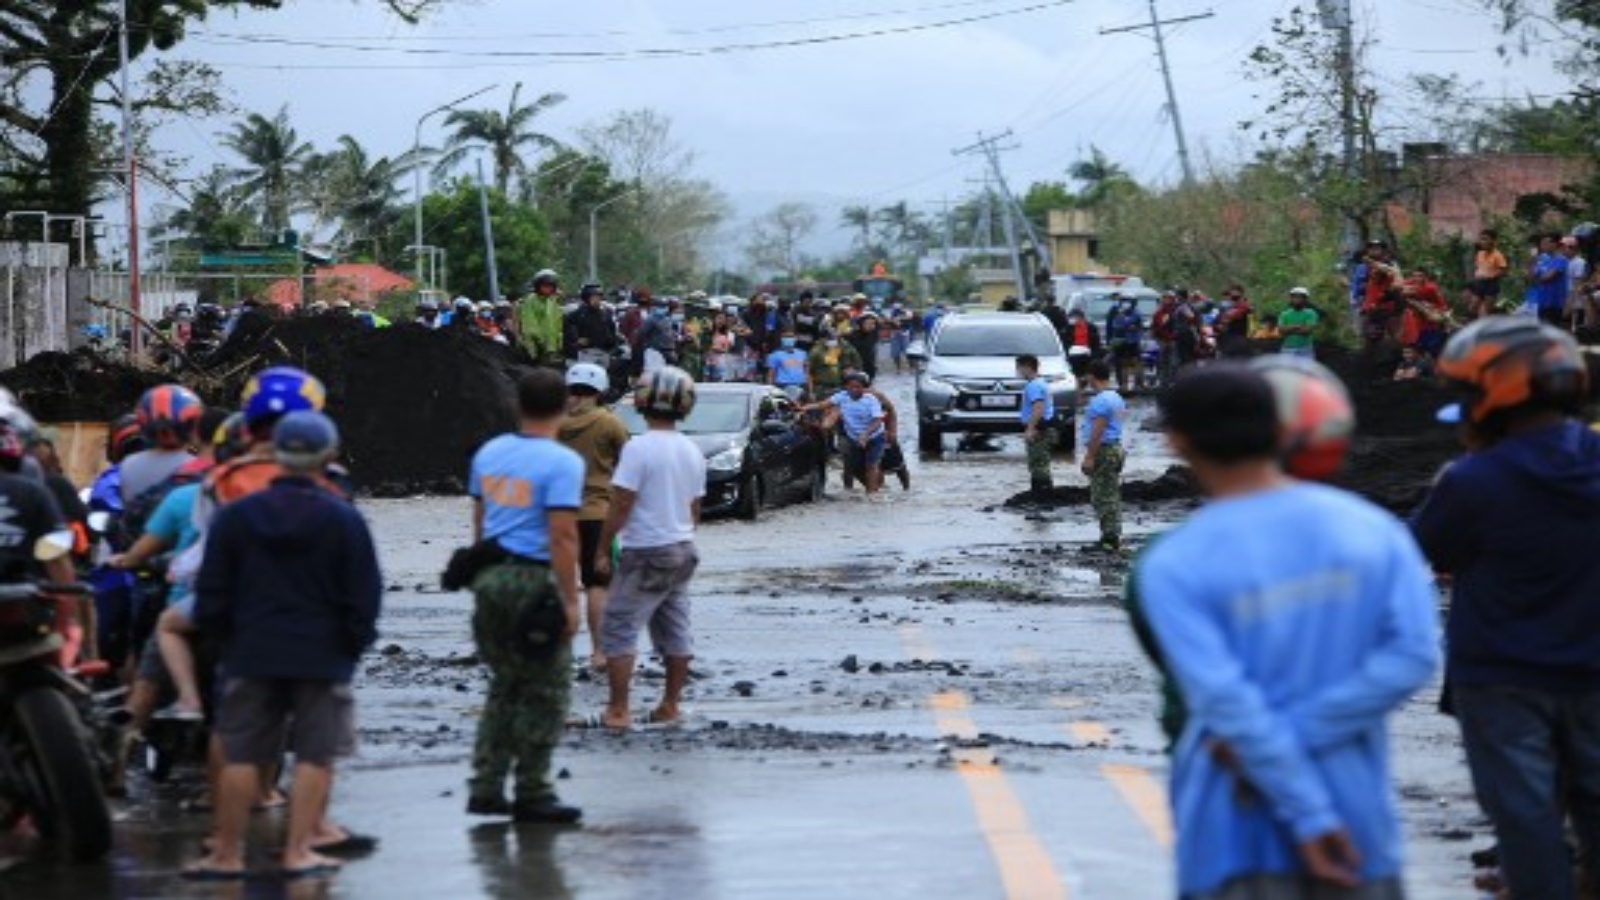 سكان متجمعون على طول الطريق الذي تضرر من جراء الأمطار الغزيرة التي سببها الإعصار غوني الفائق بعد أن ضرب بلدة ماليناو ، مقاطعة ألباي ، جنوب مانيلا في 1 نوفمبر 2020.